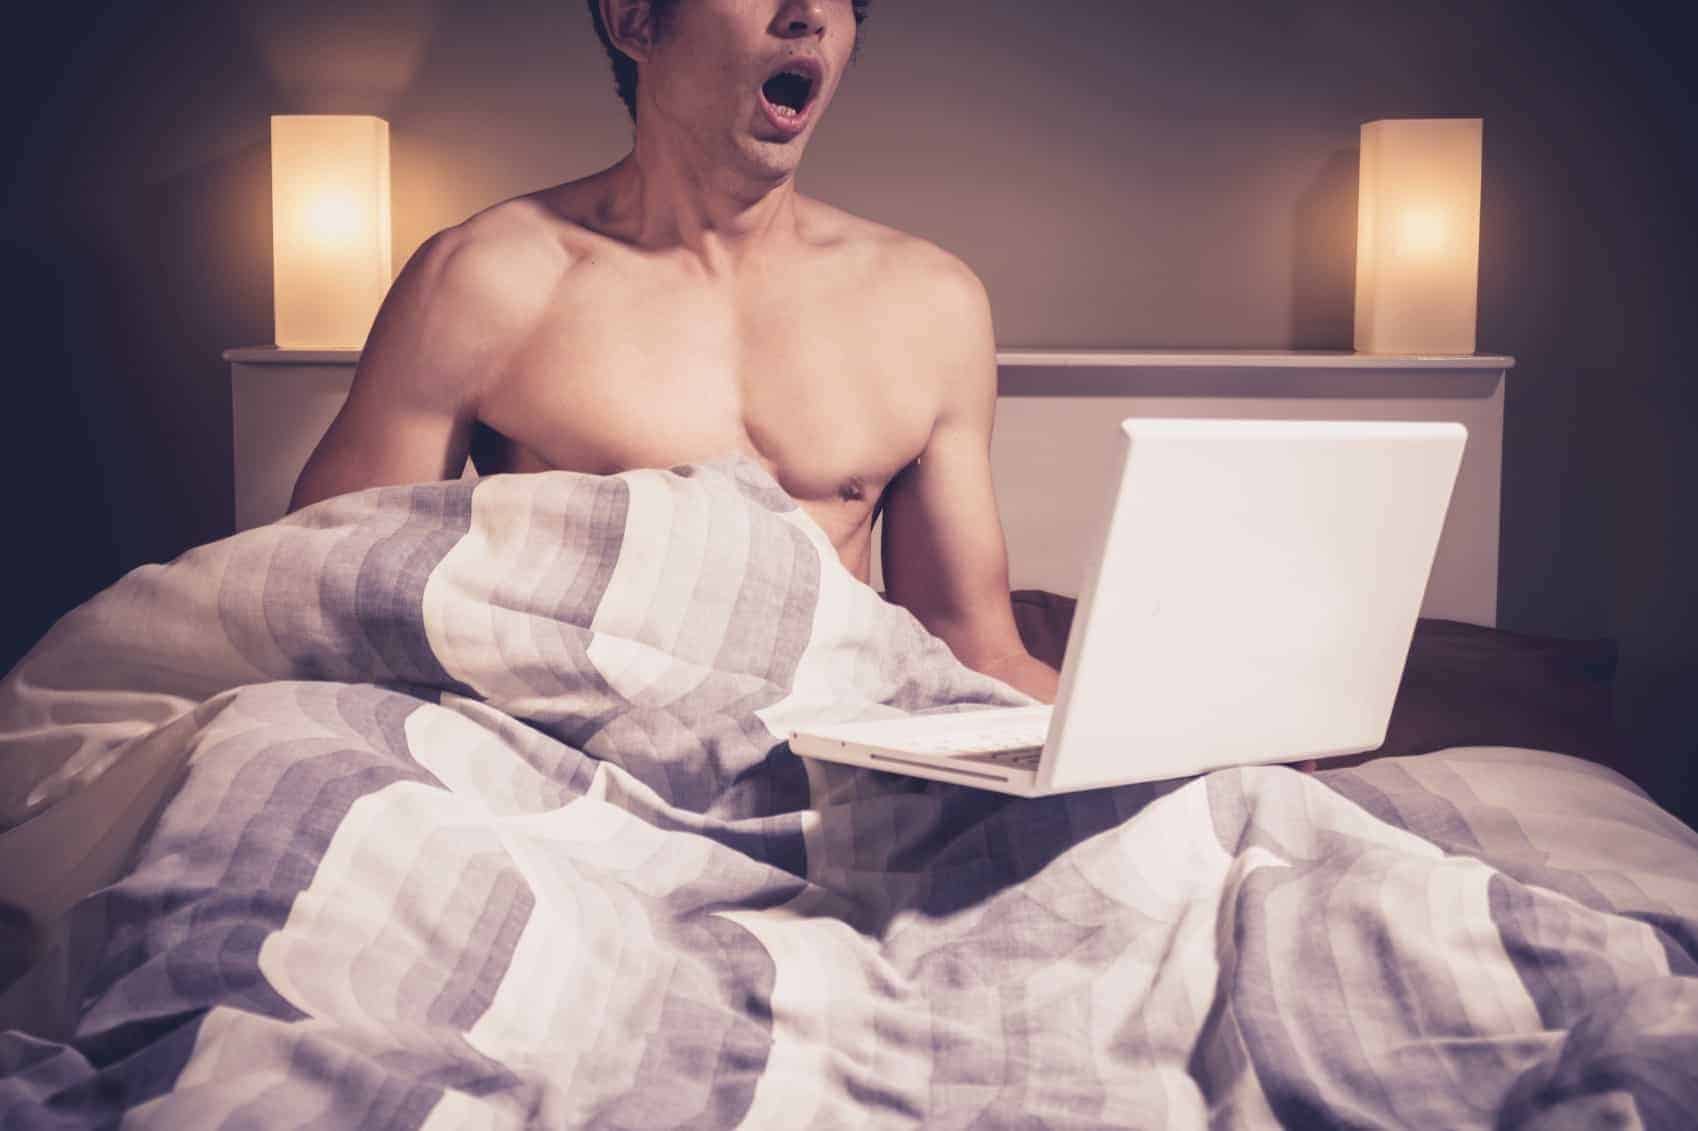 Pornografinin Yararları Ve Zararları Bilimsel Araştırmalara Konu Oldu